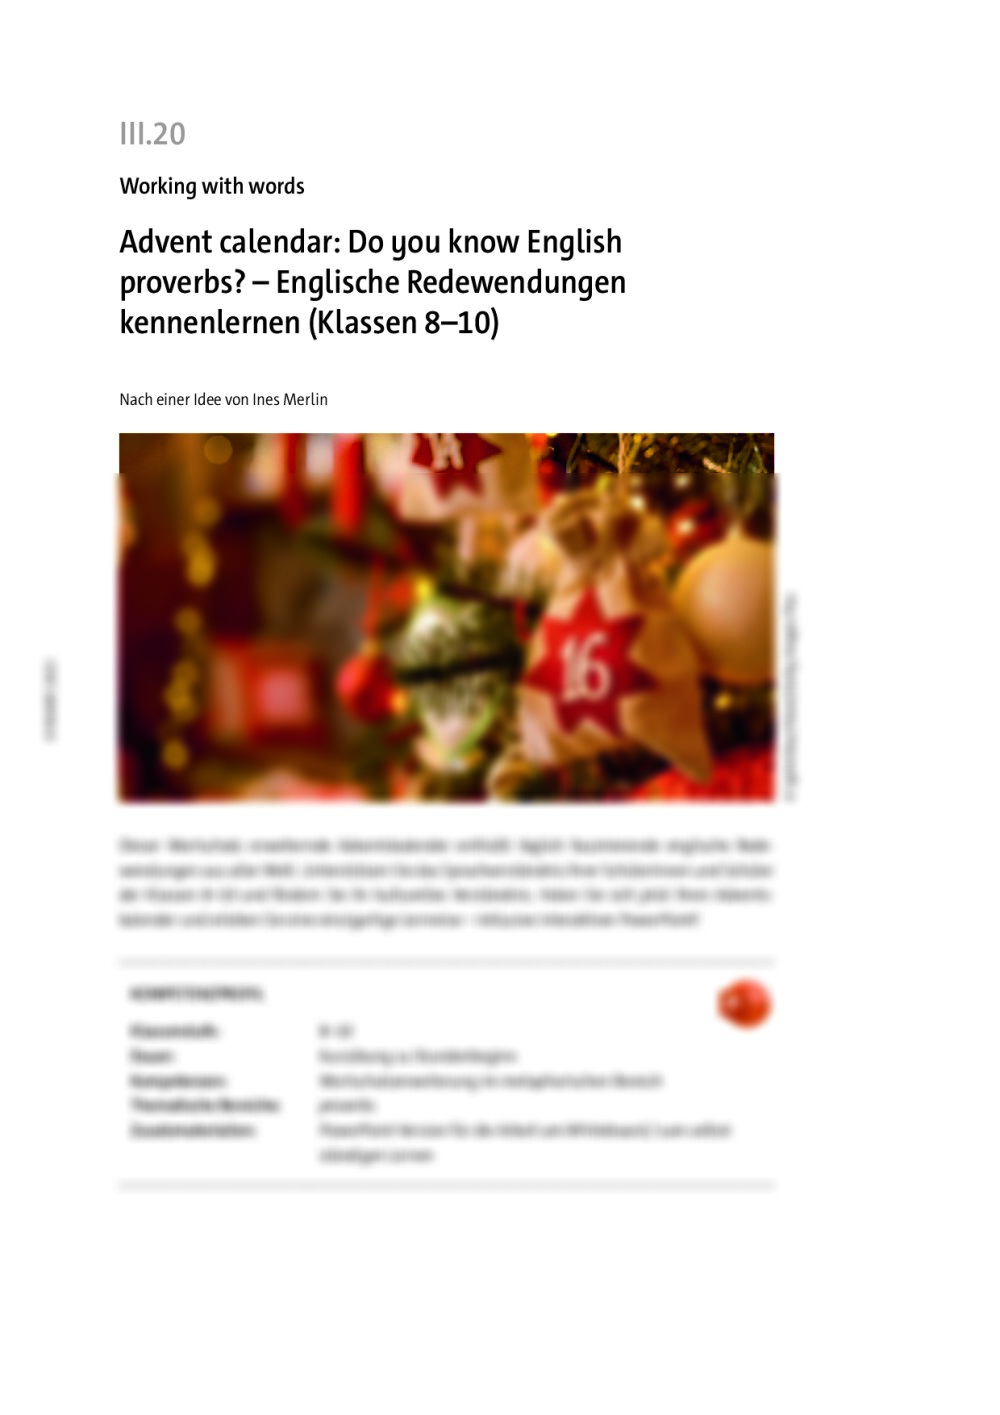 Advent calendar: Do you know English proverbs? - Seite 1